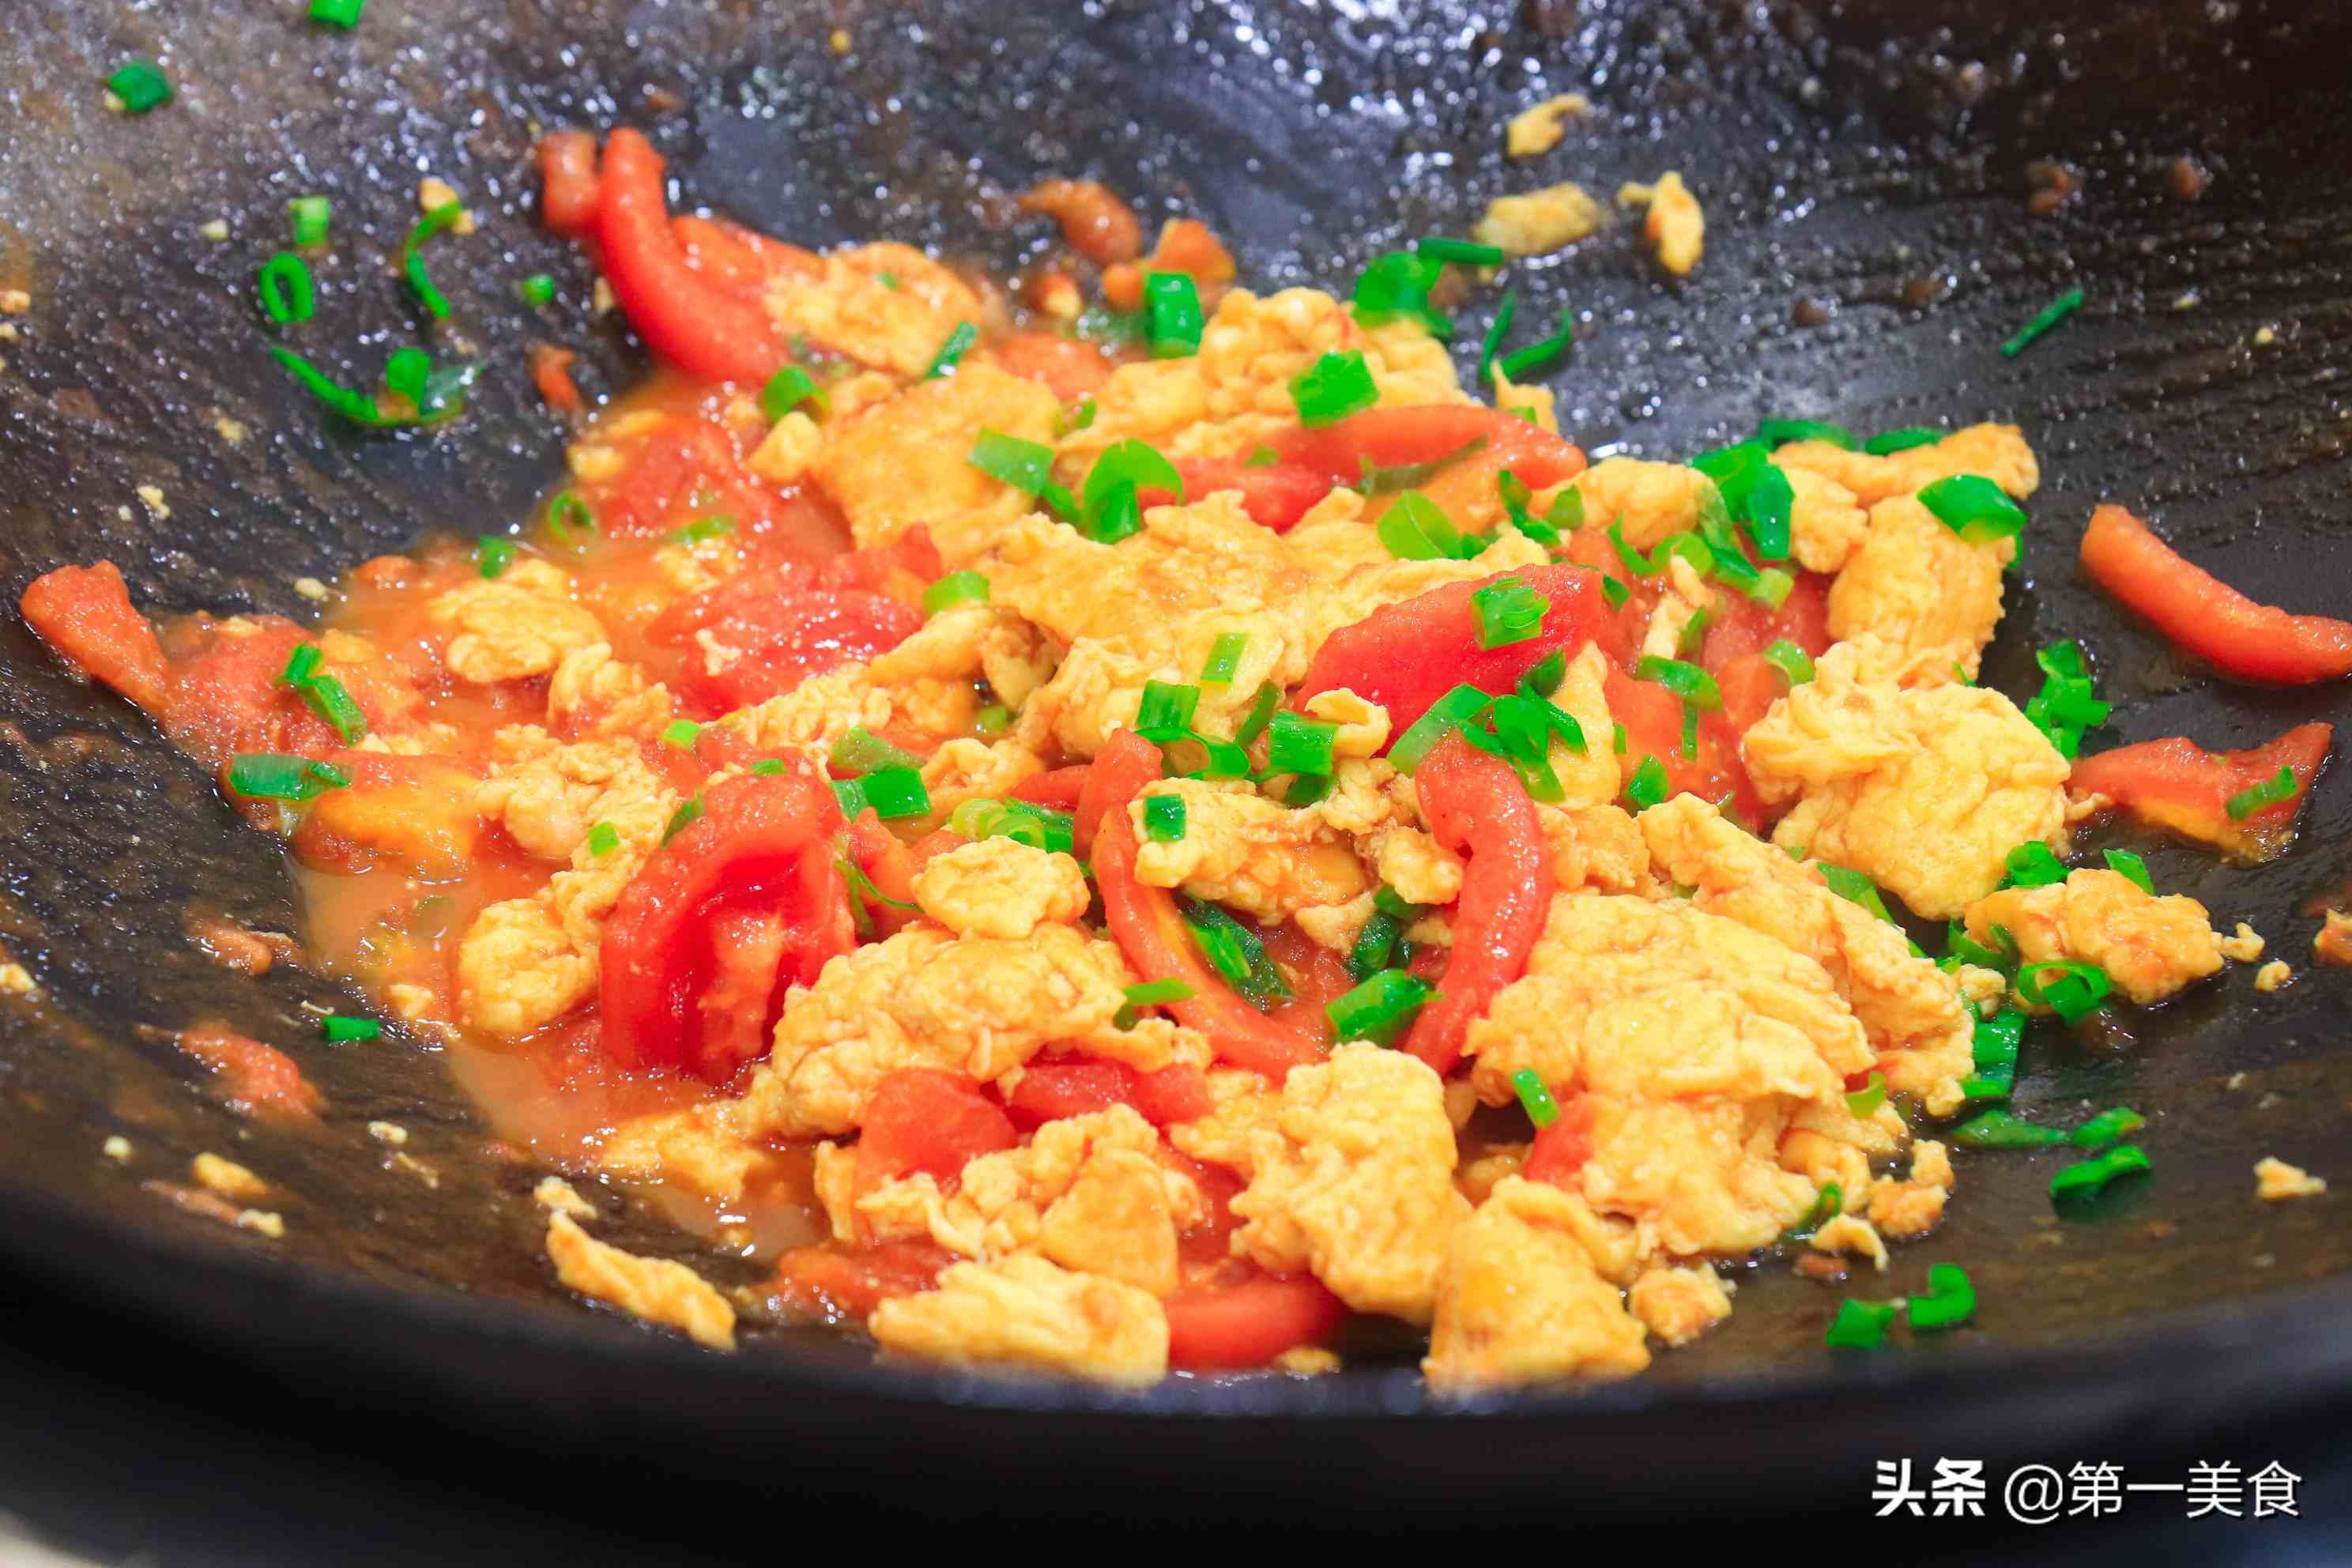 番茄炒蛋的家常做法;关于大厨教你西红柿炒鸡蛋的经典做法